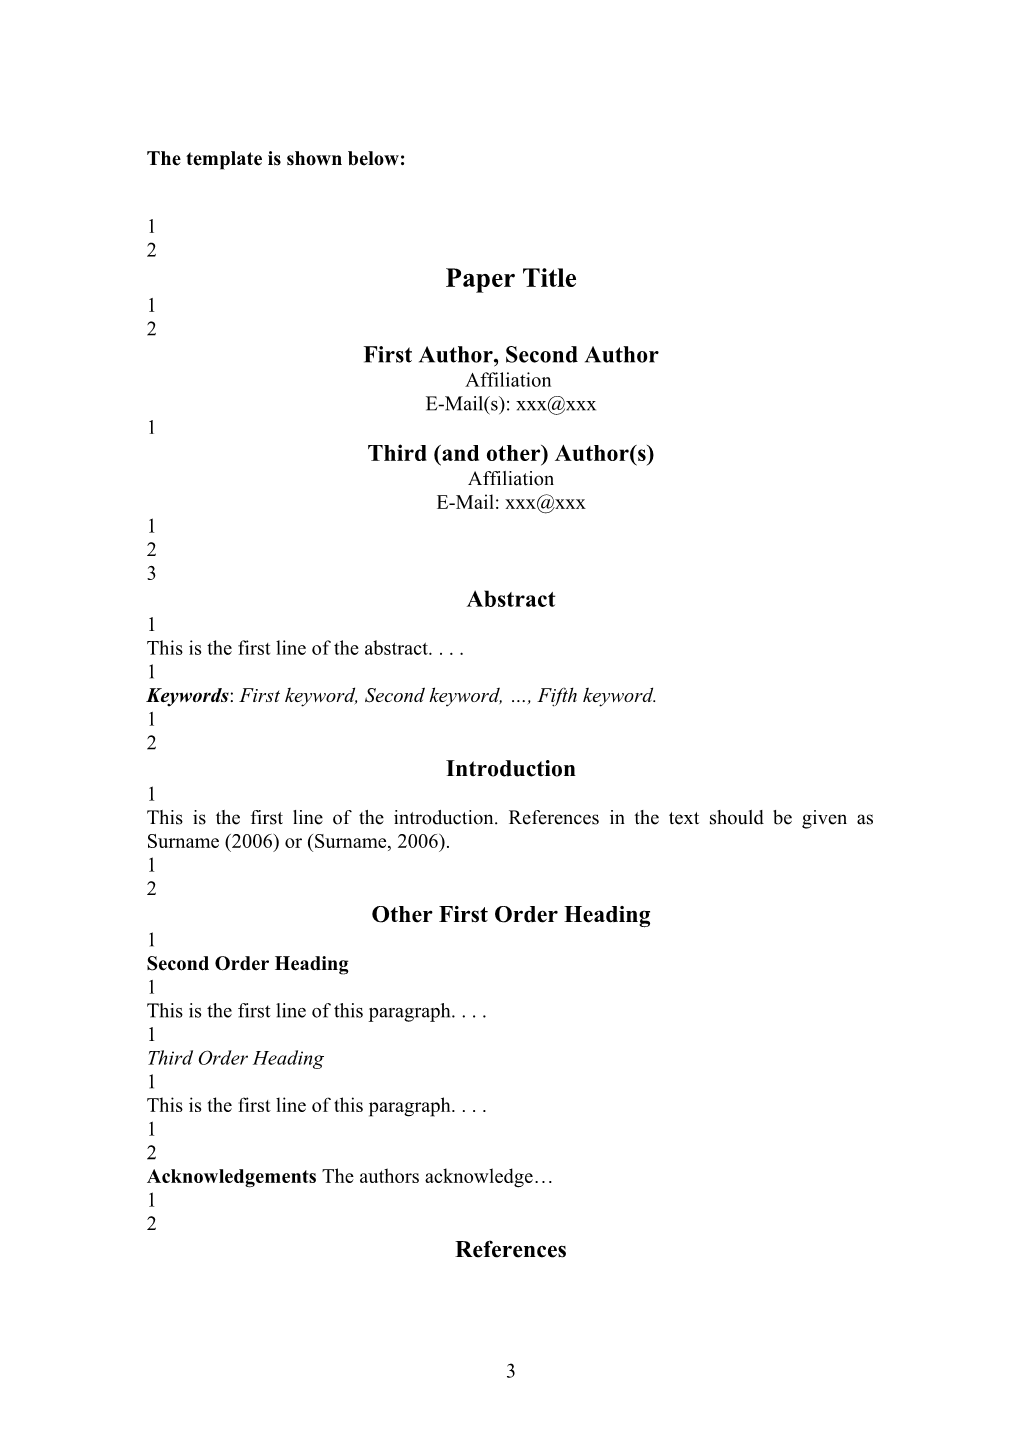 ASPIC 2012 - Paper Format